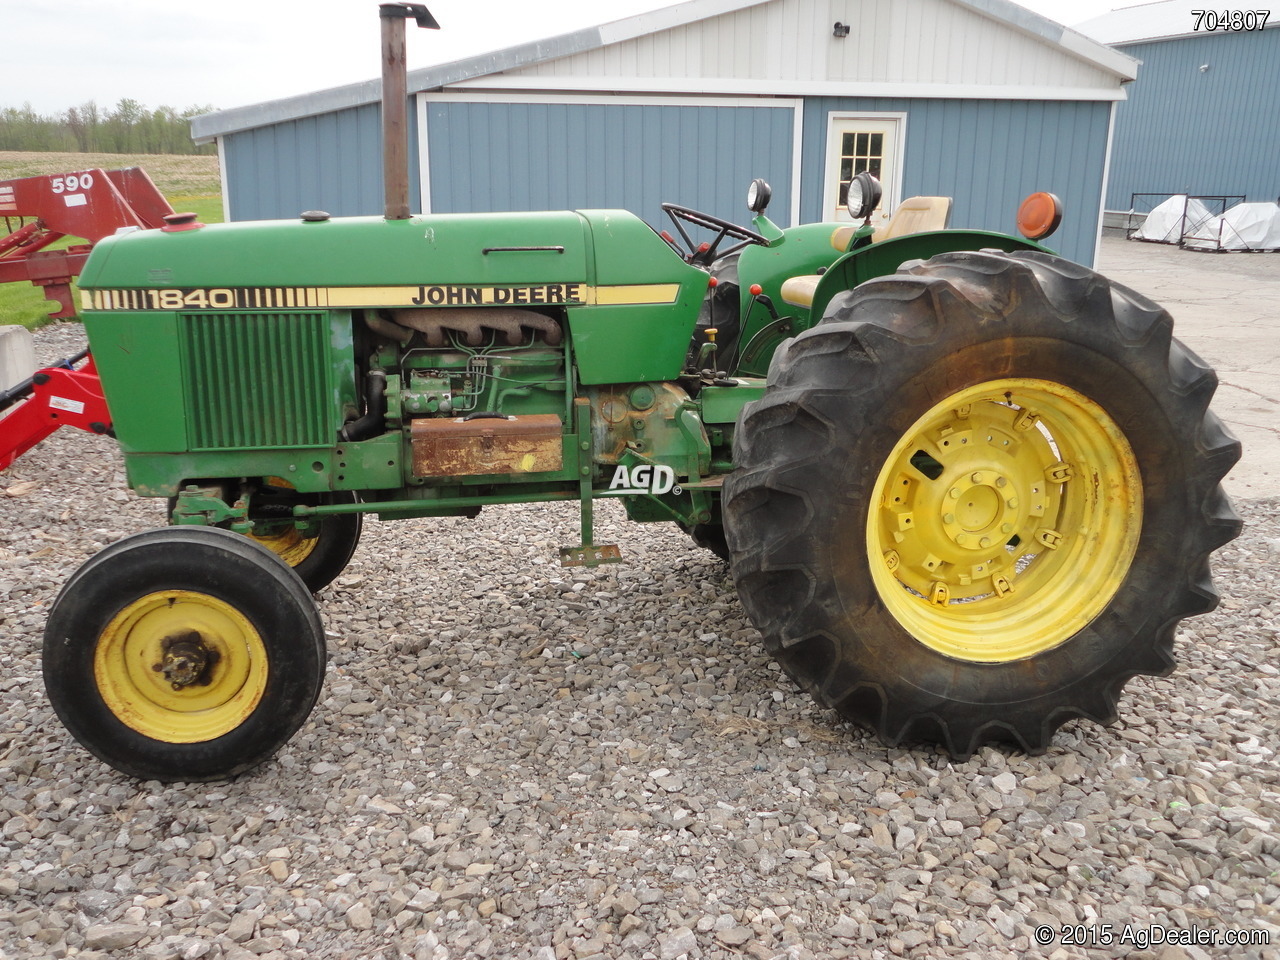 John Deere 1840 Tracteur For Sale | AgDealer.com